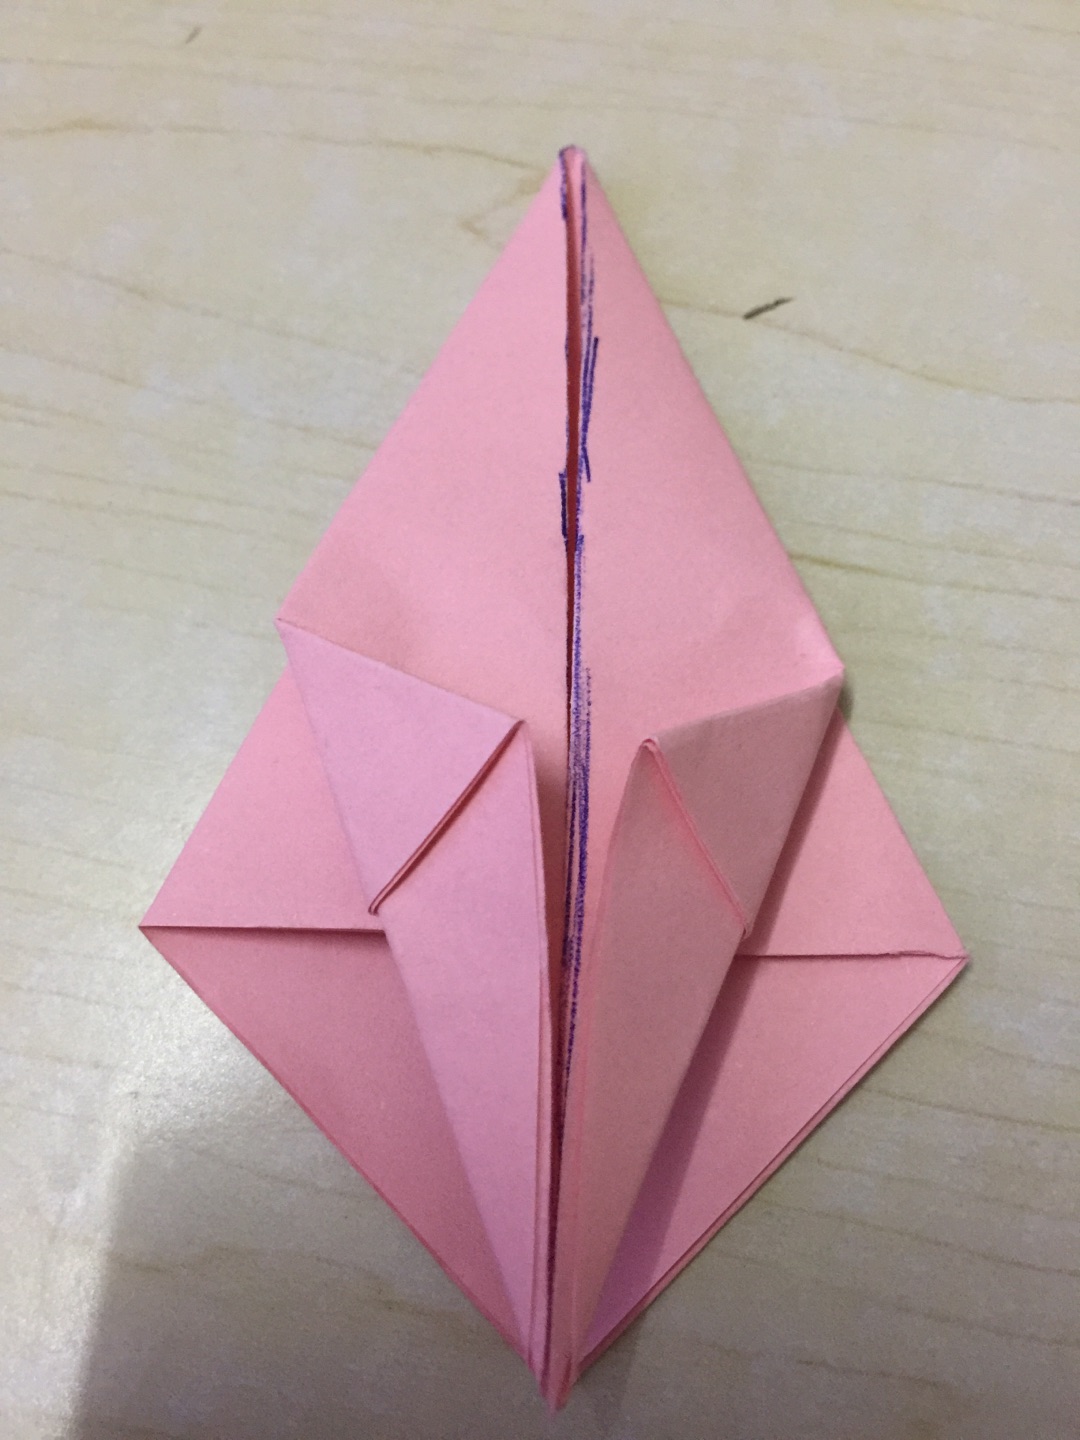 小孩易学的DIY折纸方法 小桃子的折法图解教程╭★肉丁网